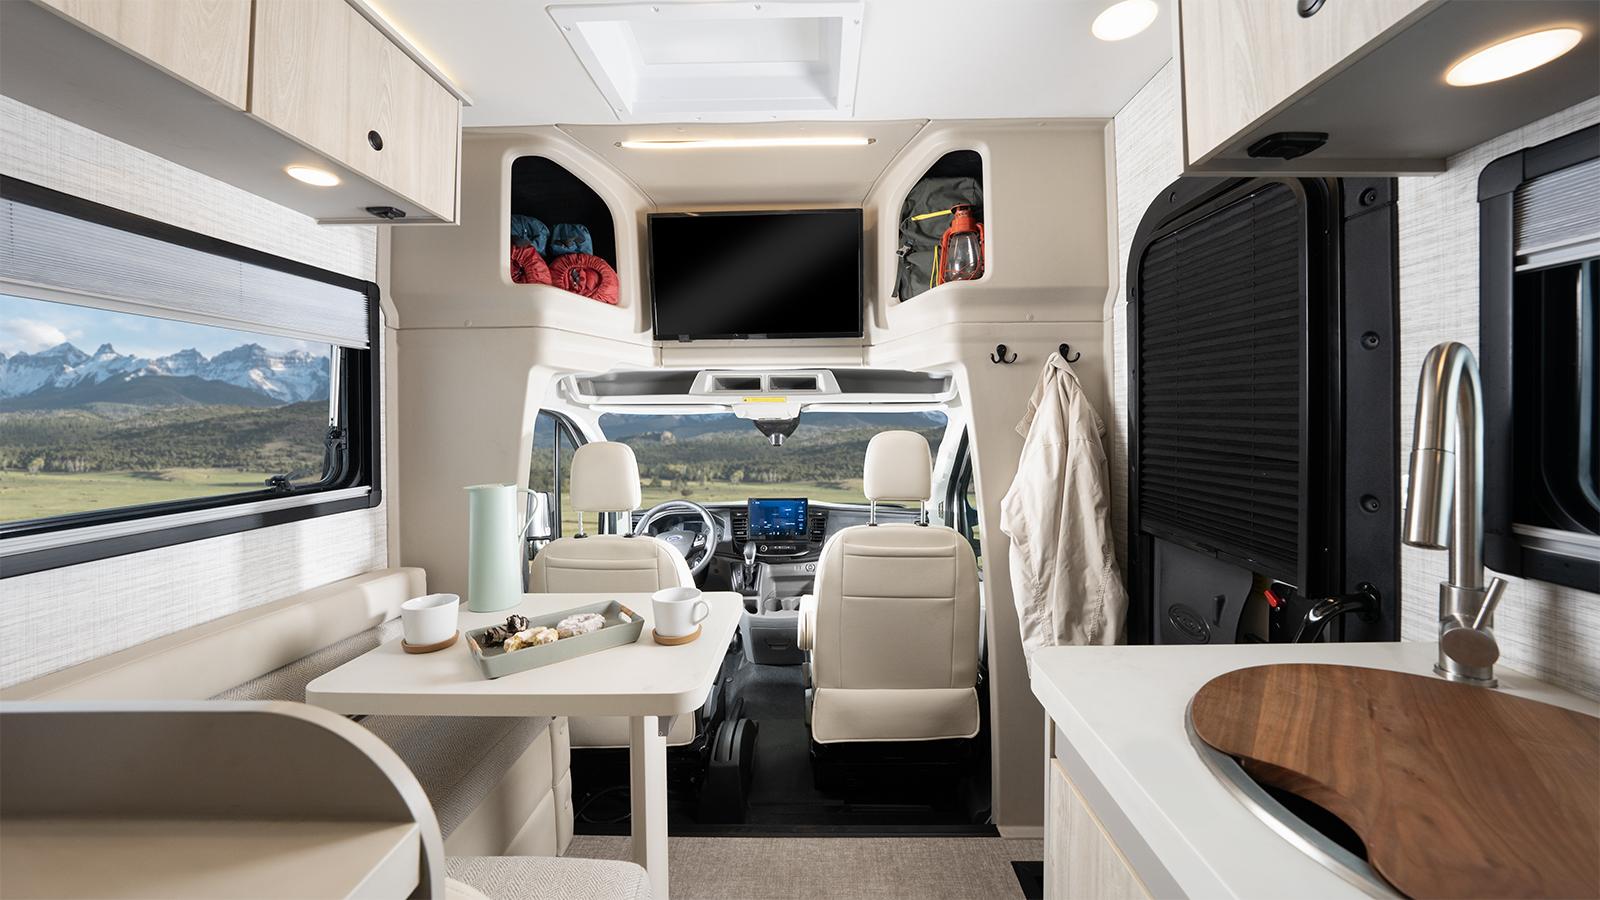 Автодом Jayco класса C Granite Ridge — лучшее место для жизни в дороге для предприимчивых путешественников